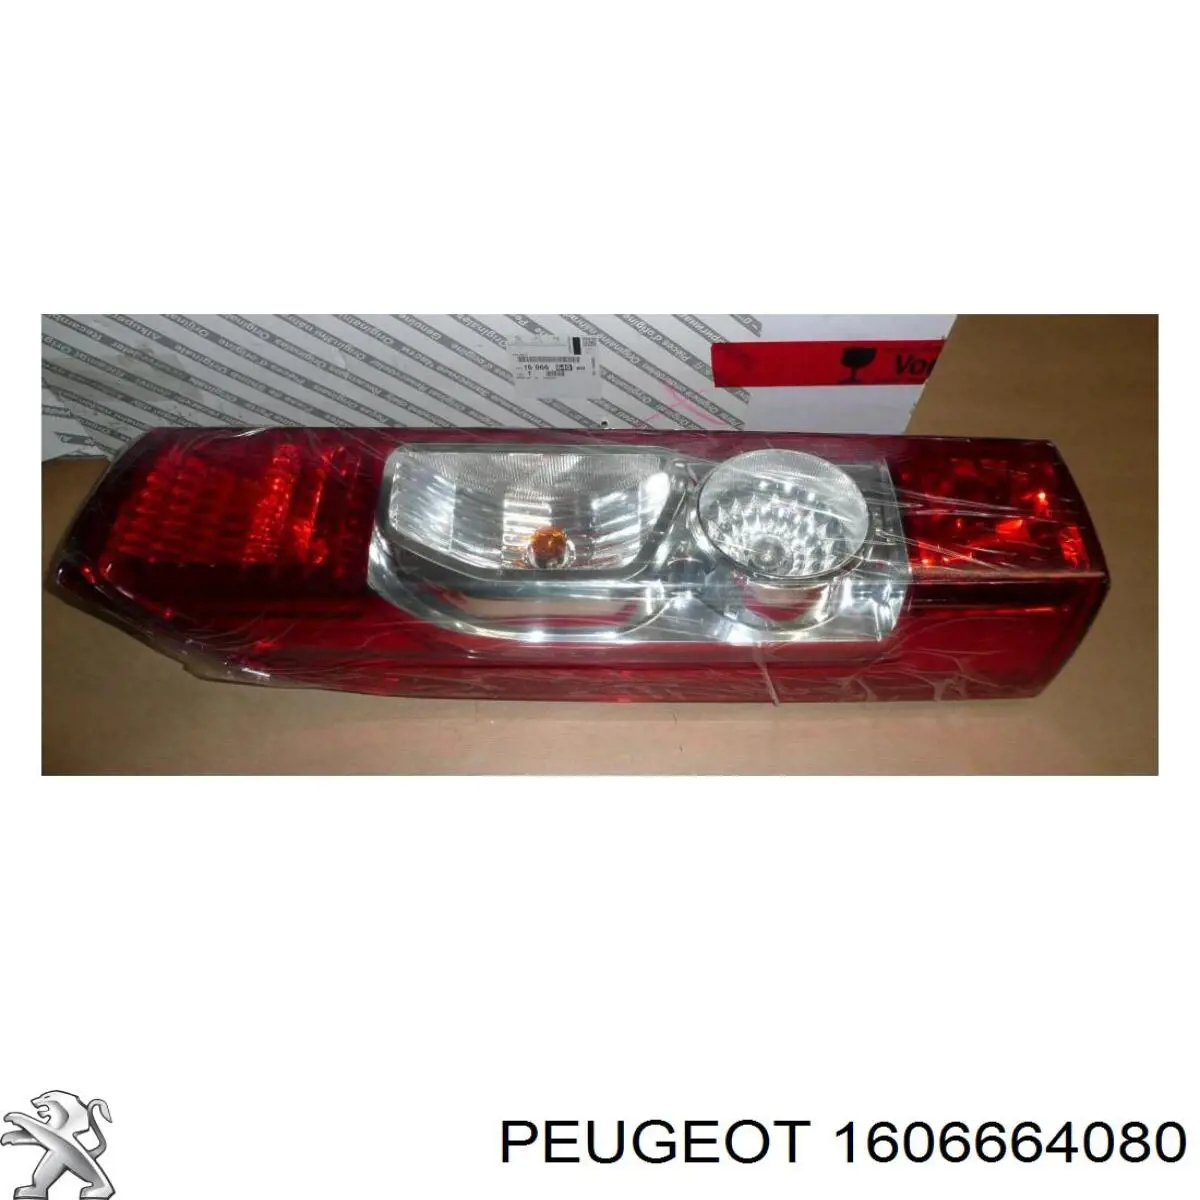 1606664080 Peugeot/Citroen piloto posterior izquierdo